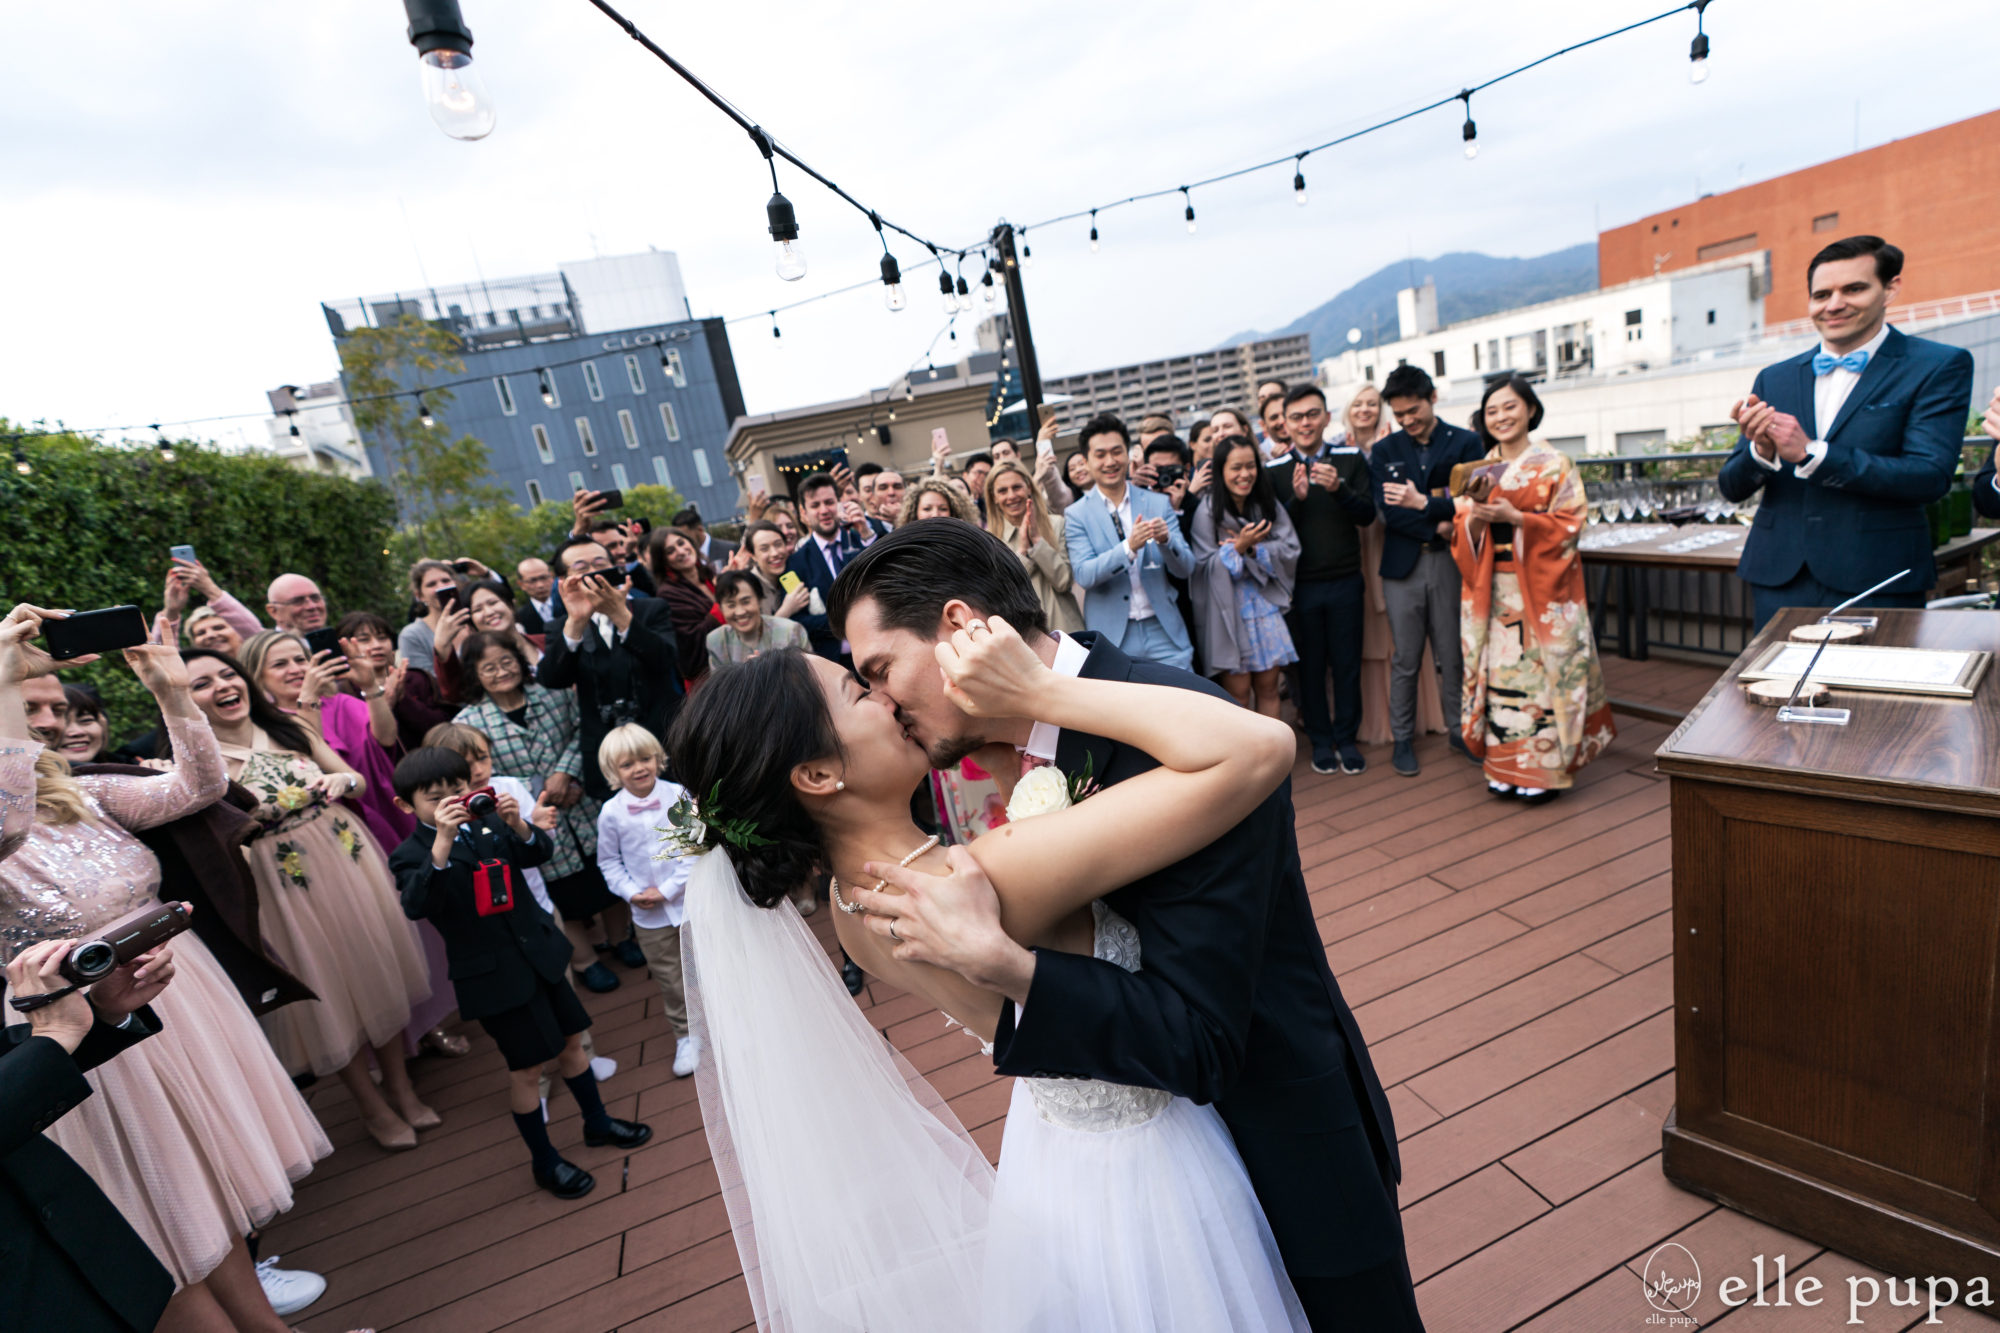 京都のガーデンウェディングでの結婚式。熱いキスを交わす新郎新婦。